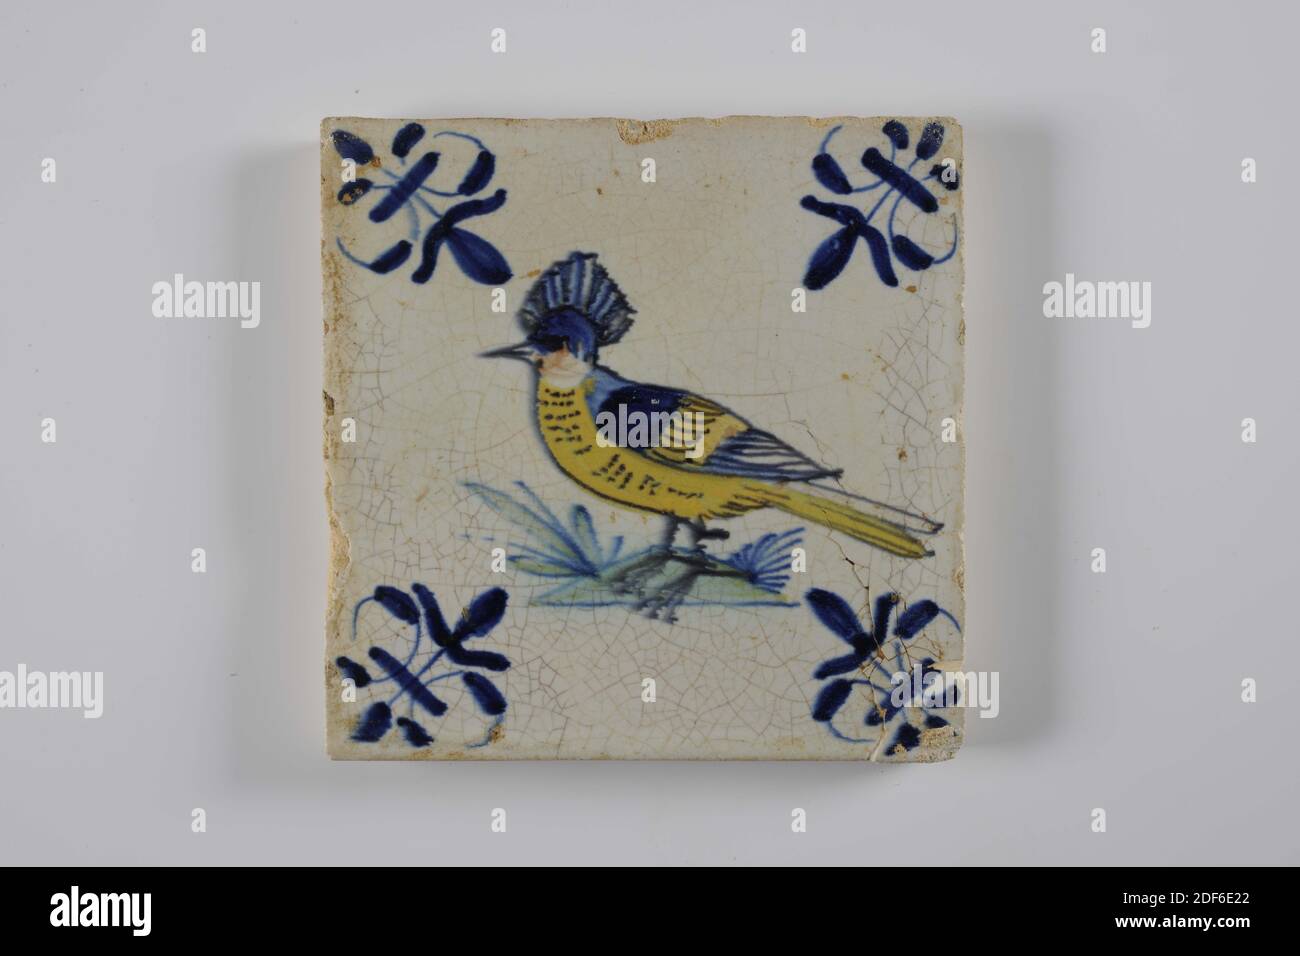 Carreau de mur, Anonyme, entre 1620-1650, glaçure d'étain, faïence, général: 13 x 13 x 1,2cm (130 x 130 x 12mm), oiseau, gouda, carreau de mur de faïence recouvert de glaçure d'étain. La tuile est peinte multicolore en vert, bleu et jaune. La tuile représente un oiseau orienté vers la gauche avec une crête sur un sol. La tuile a un lis comme un motif de coin, 1995 Banque D'Images